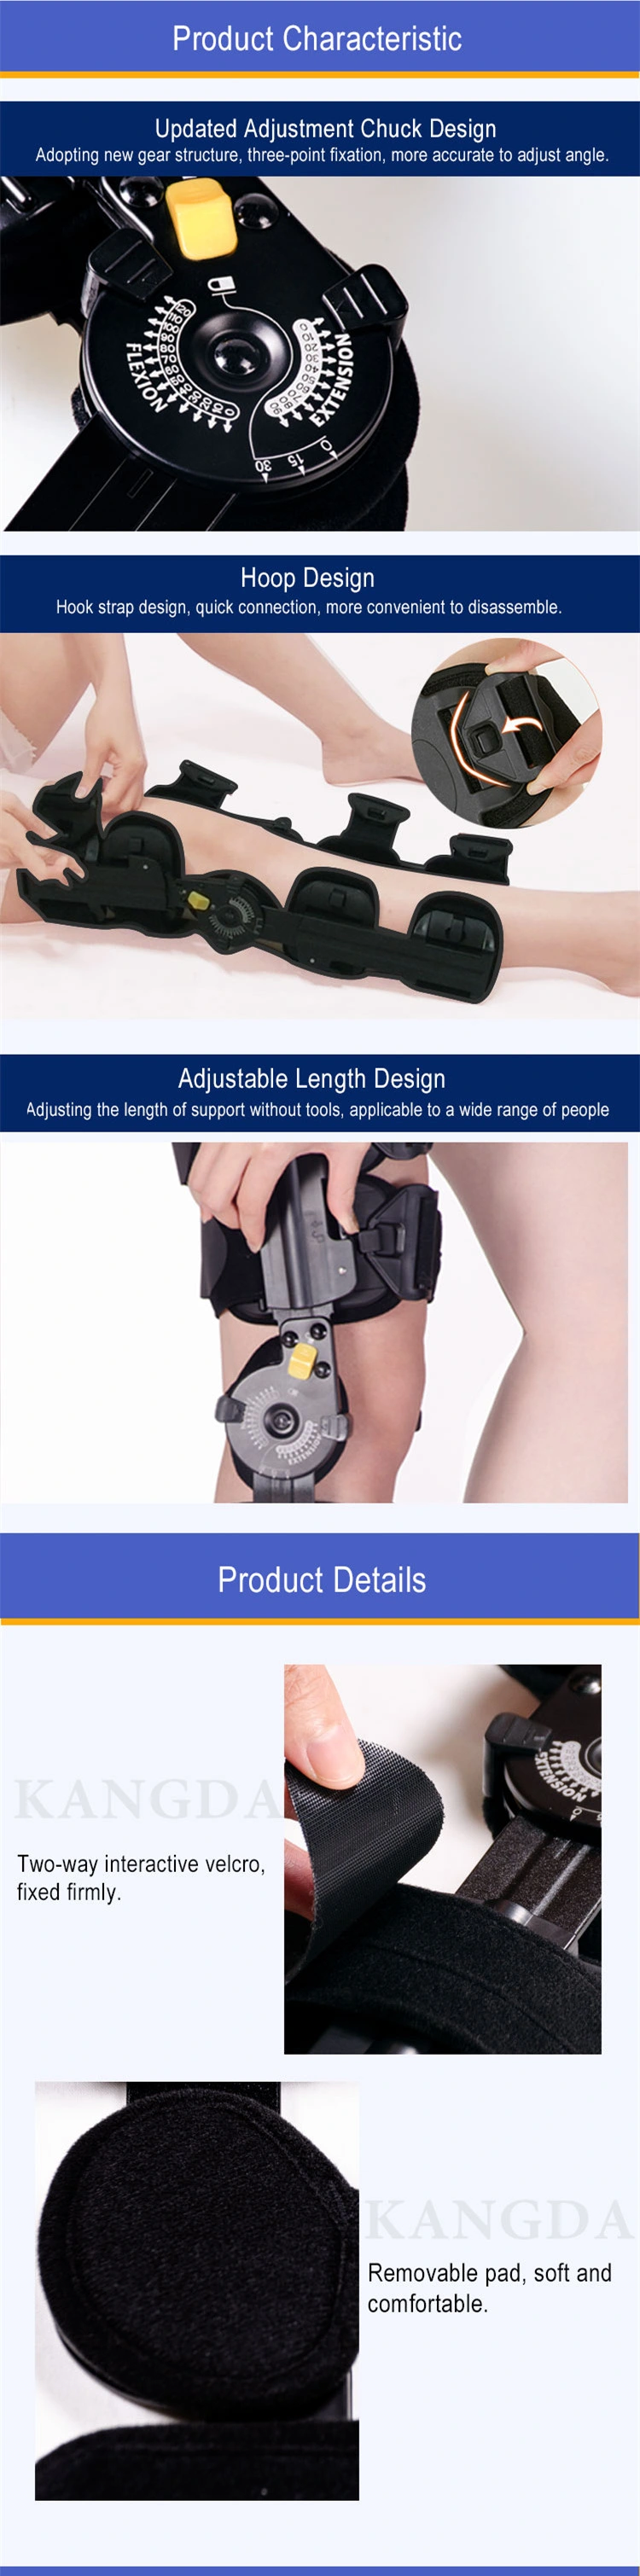 Angle Adjustable Knee Brace ROM Hinged Knee Orthopedic Knee Support Brace for Adults